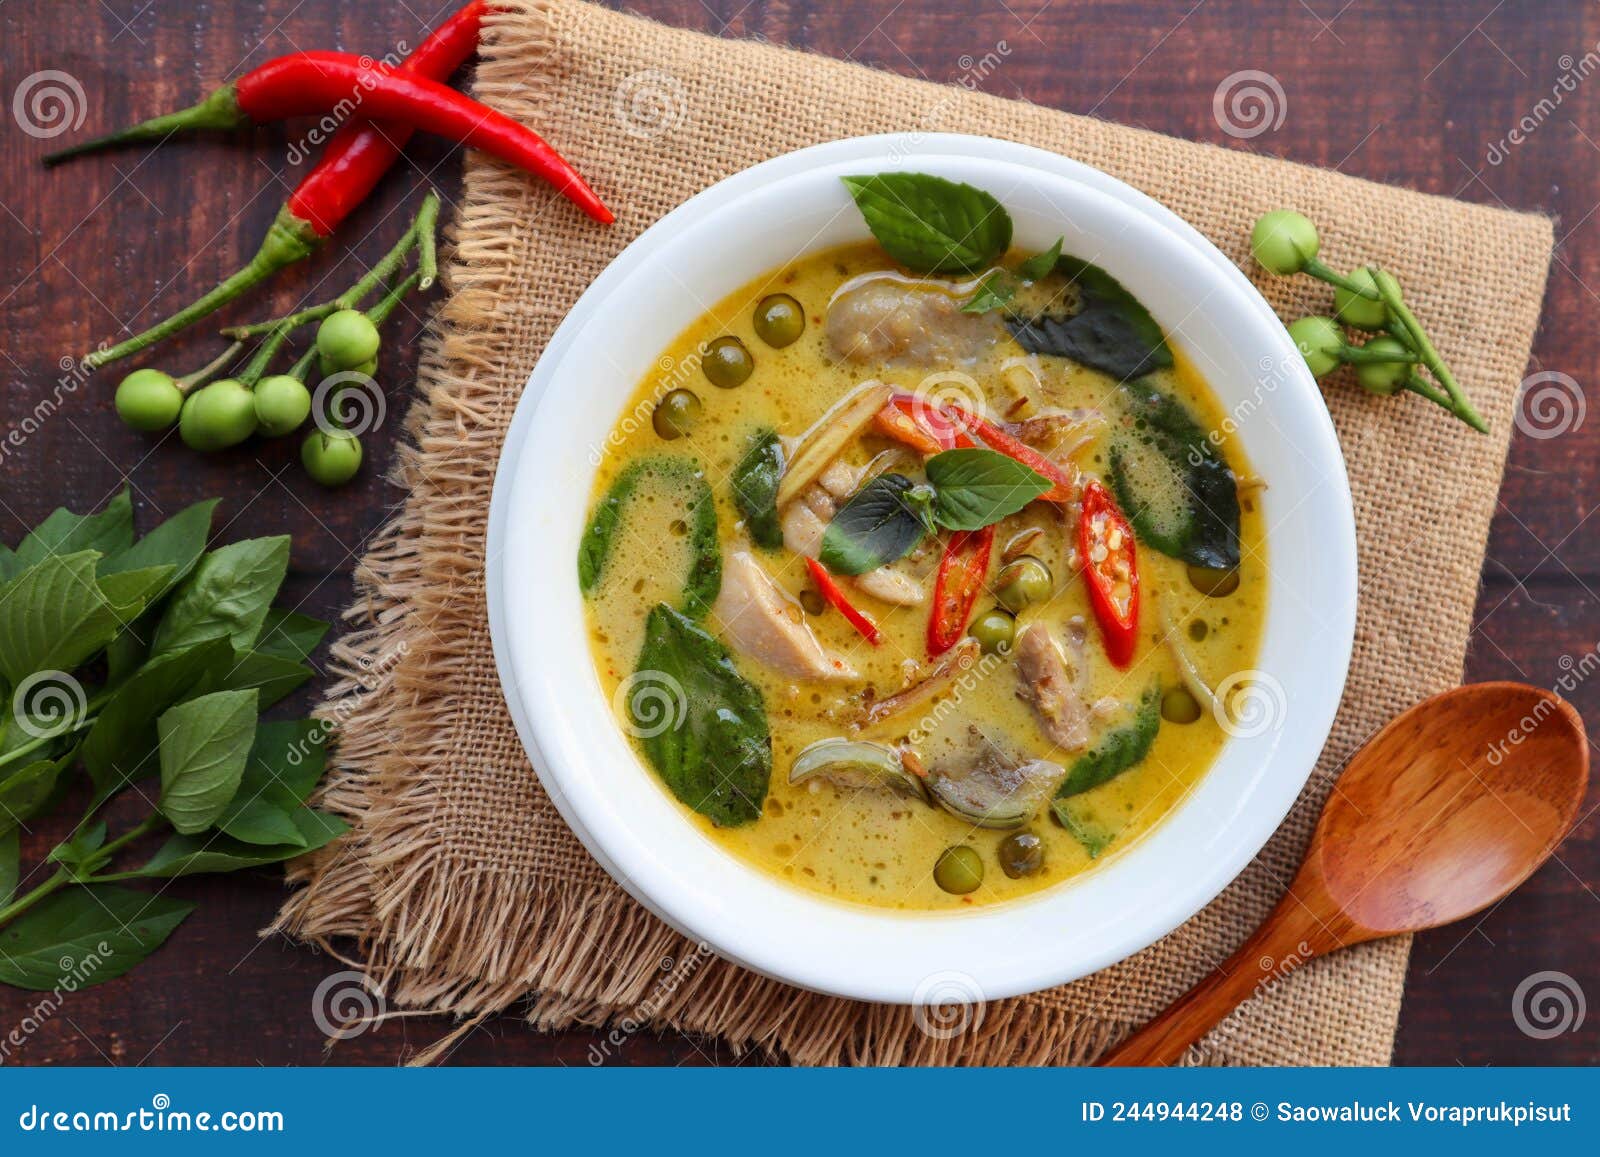 陶瓷碗中的绿咖喱鸡肉和泰国茄子 (Kaeng khiao wan) 配米粉。高清摄影大图-千库网